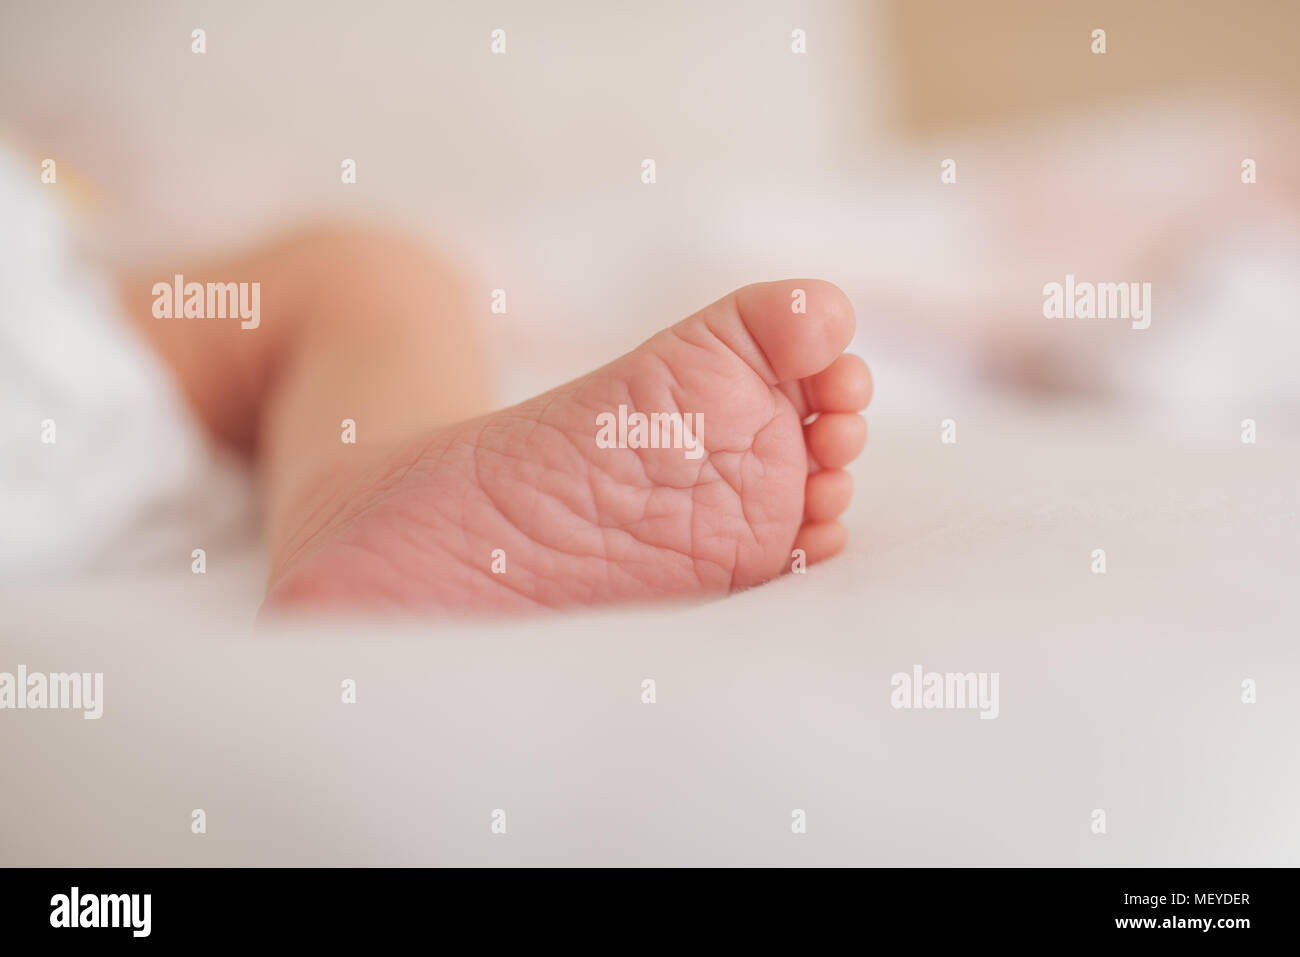 Pie de bebé recién nacido. Concepto de cuidado de la piel. Foto de stock